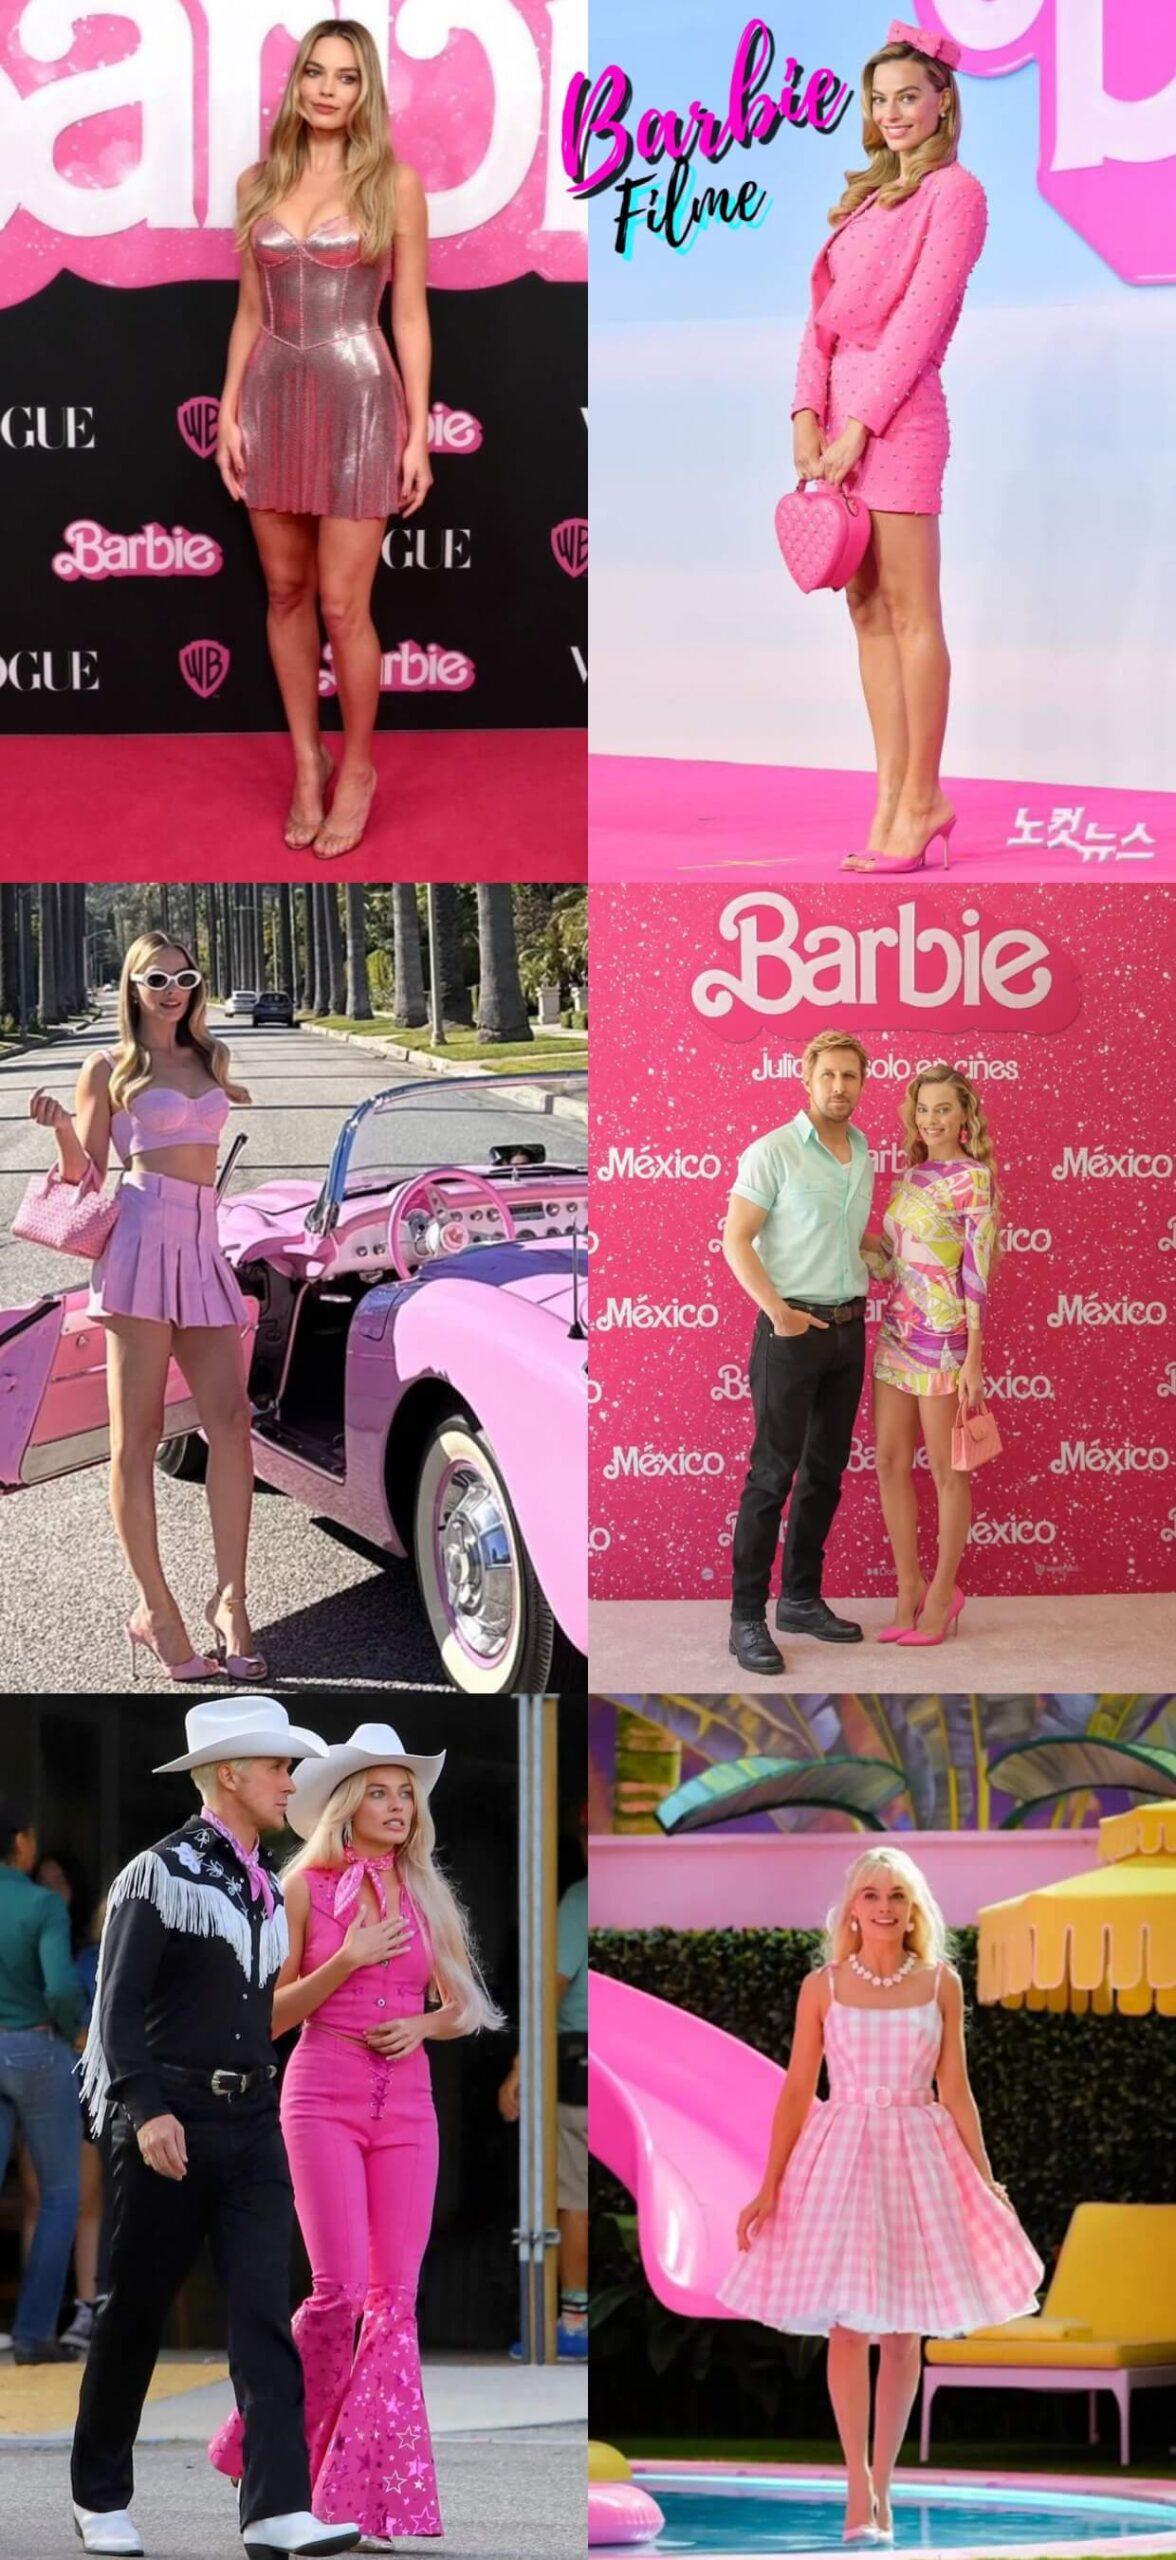 Barbiecore - roupas da boneca Barbie